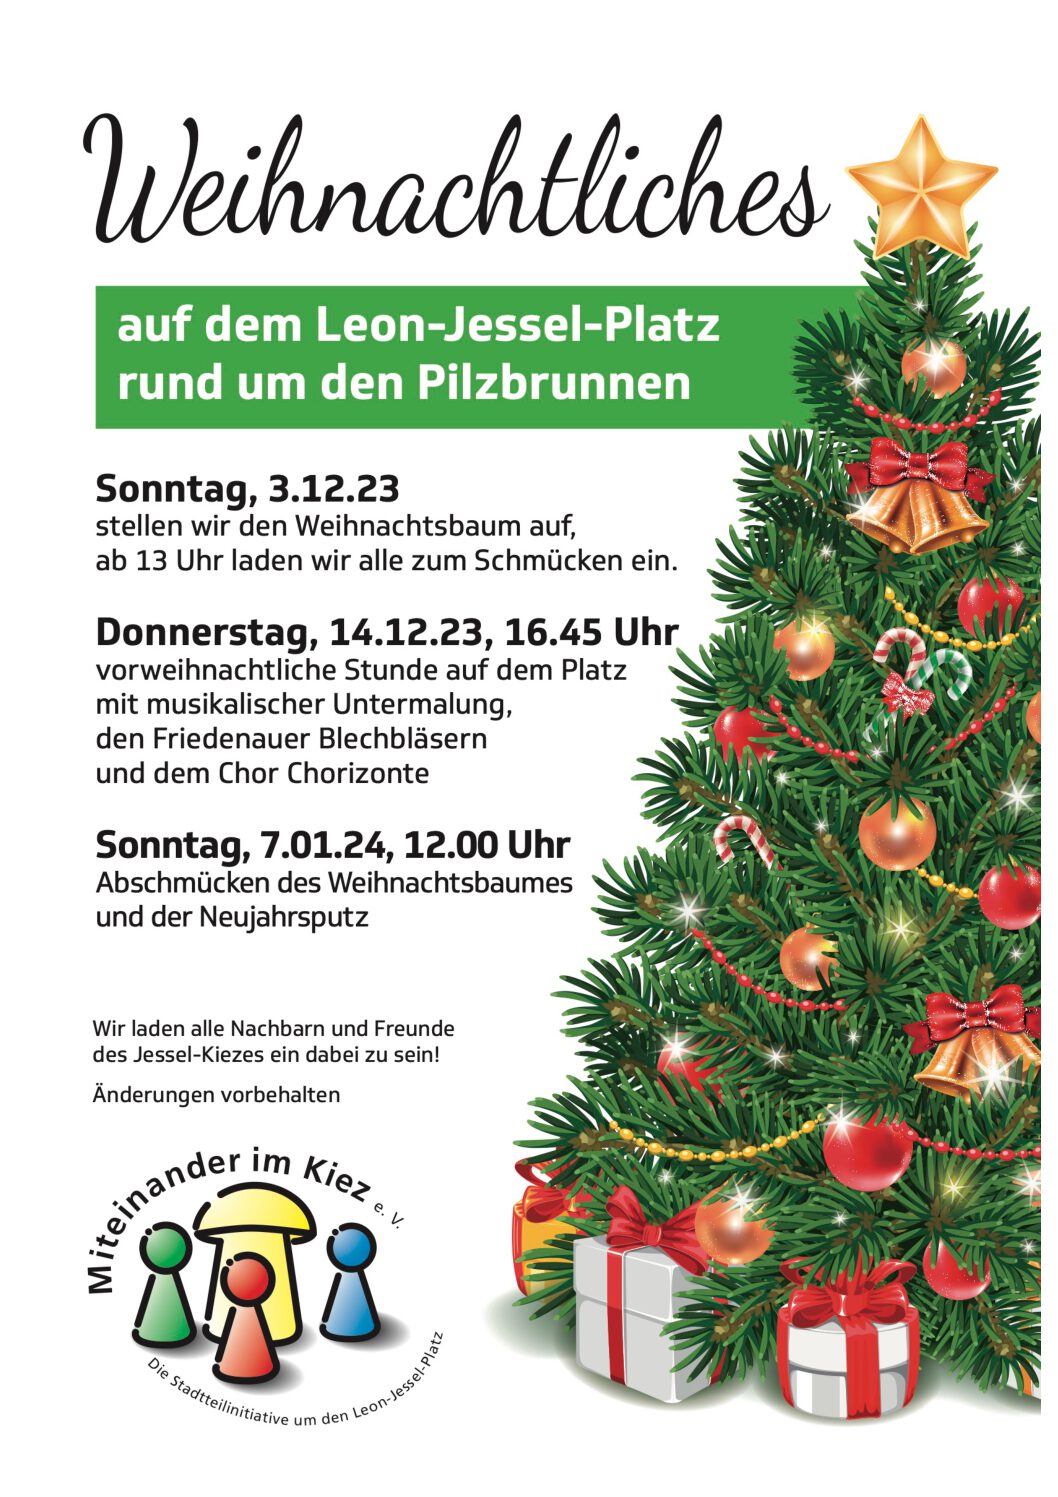 You are currently viewing  Weihnachtliches auf dem Leon-Jessel-Platz I Miteinander im Kiez e.V.